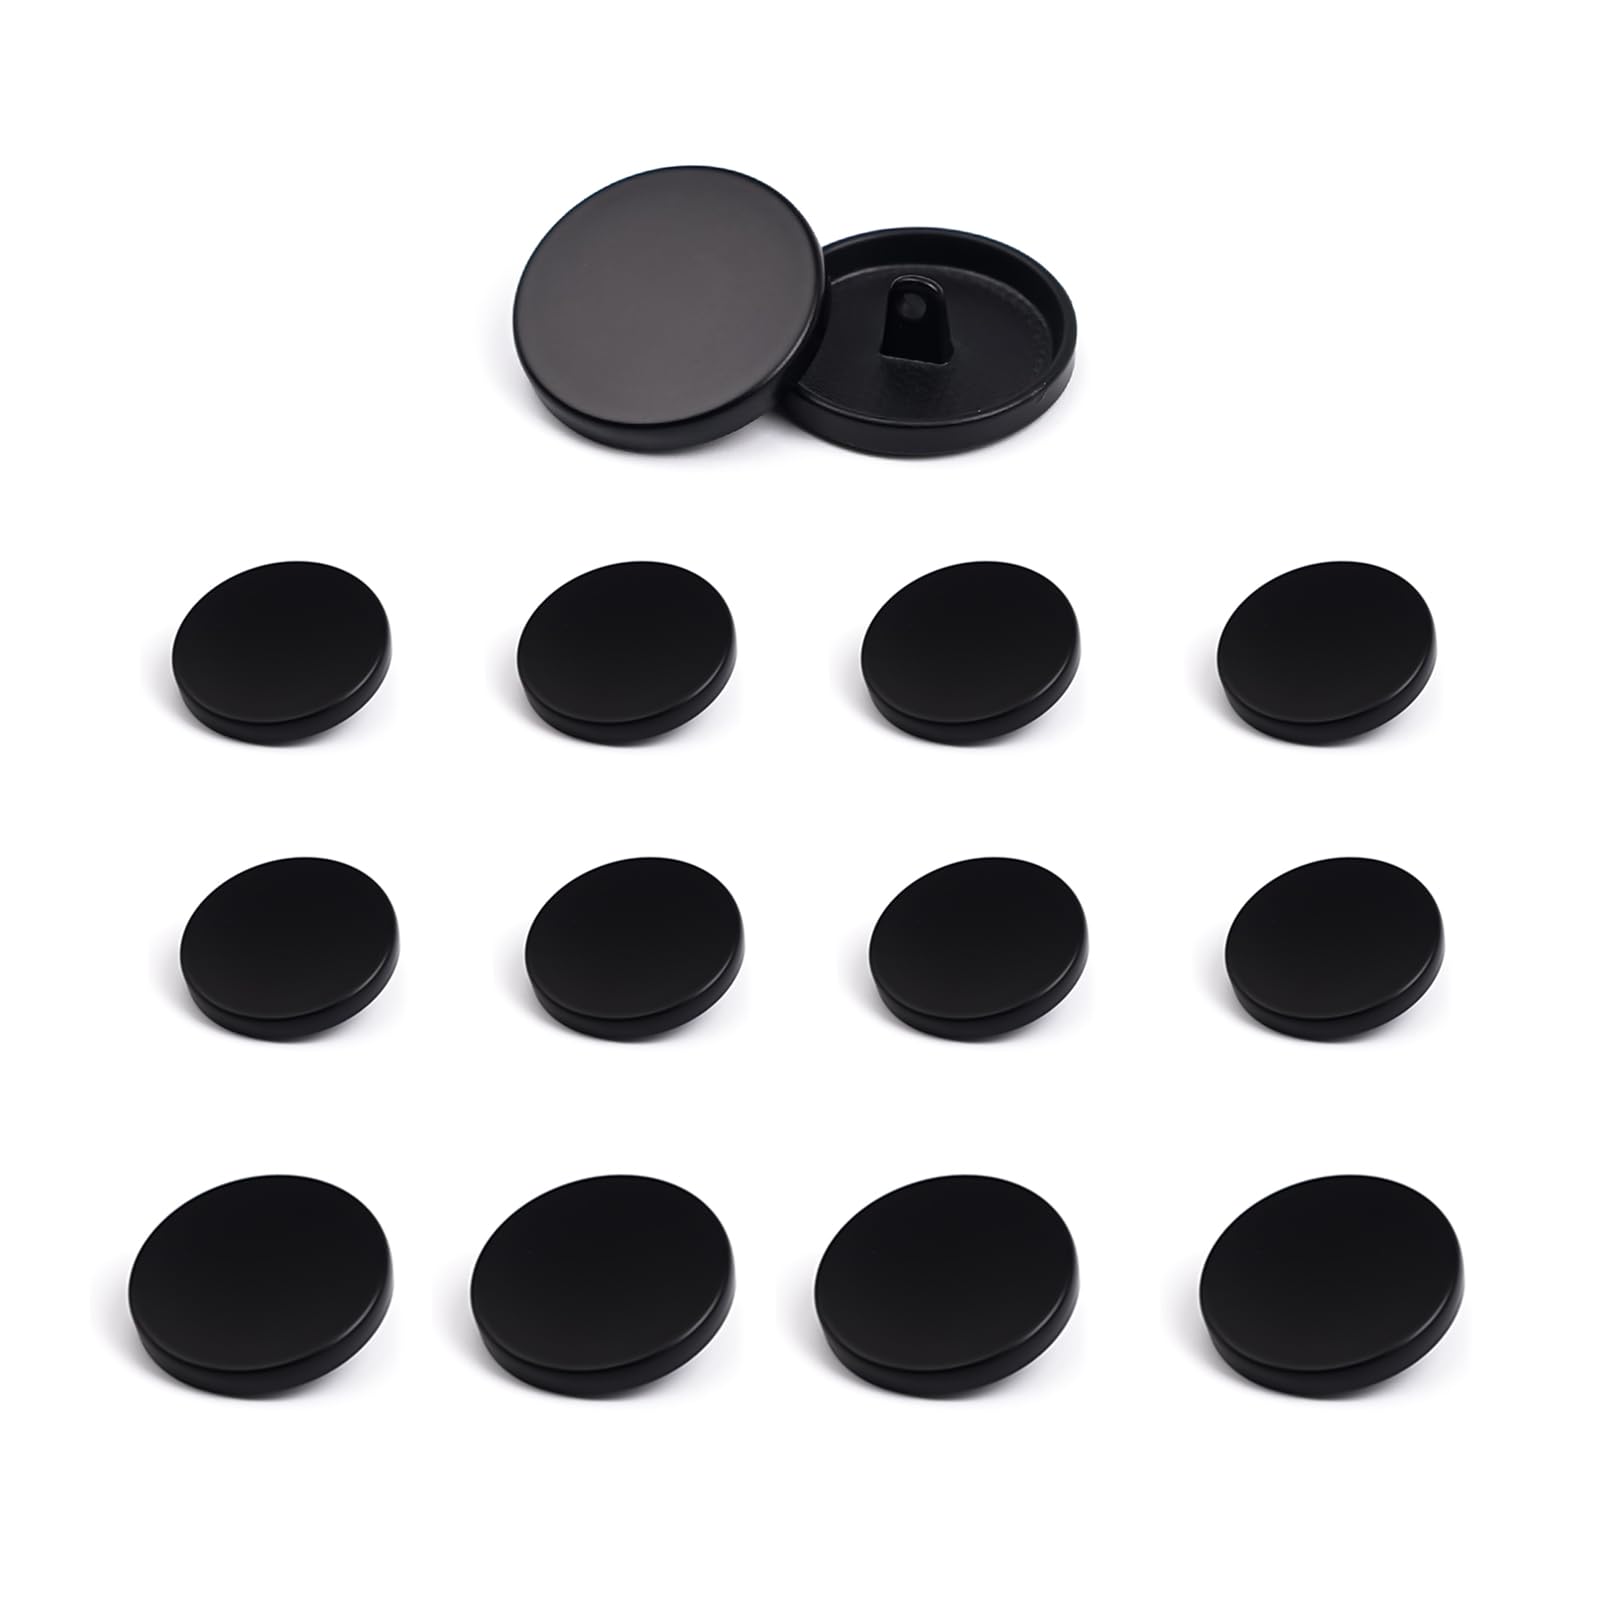 MAEXUS ボタンセット 12個セット 裁縫用ボタン 4個x23mm 風呂敷用のボタン 大衣用のボタン 8個x15mm スーツ用ボタン ジャケット用ボタン 裁縫やハンドメイドにぴったりのボタンセット 黒色